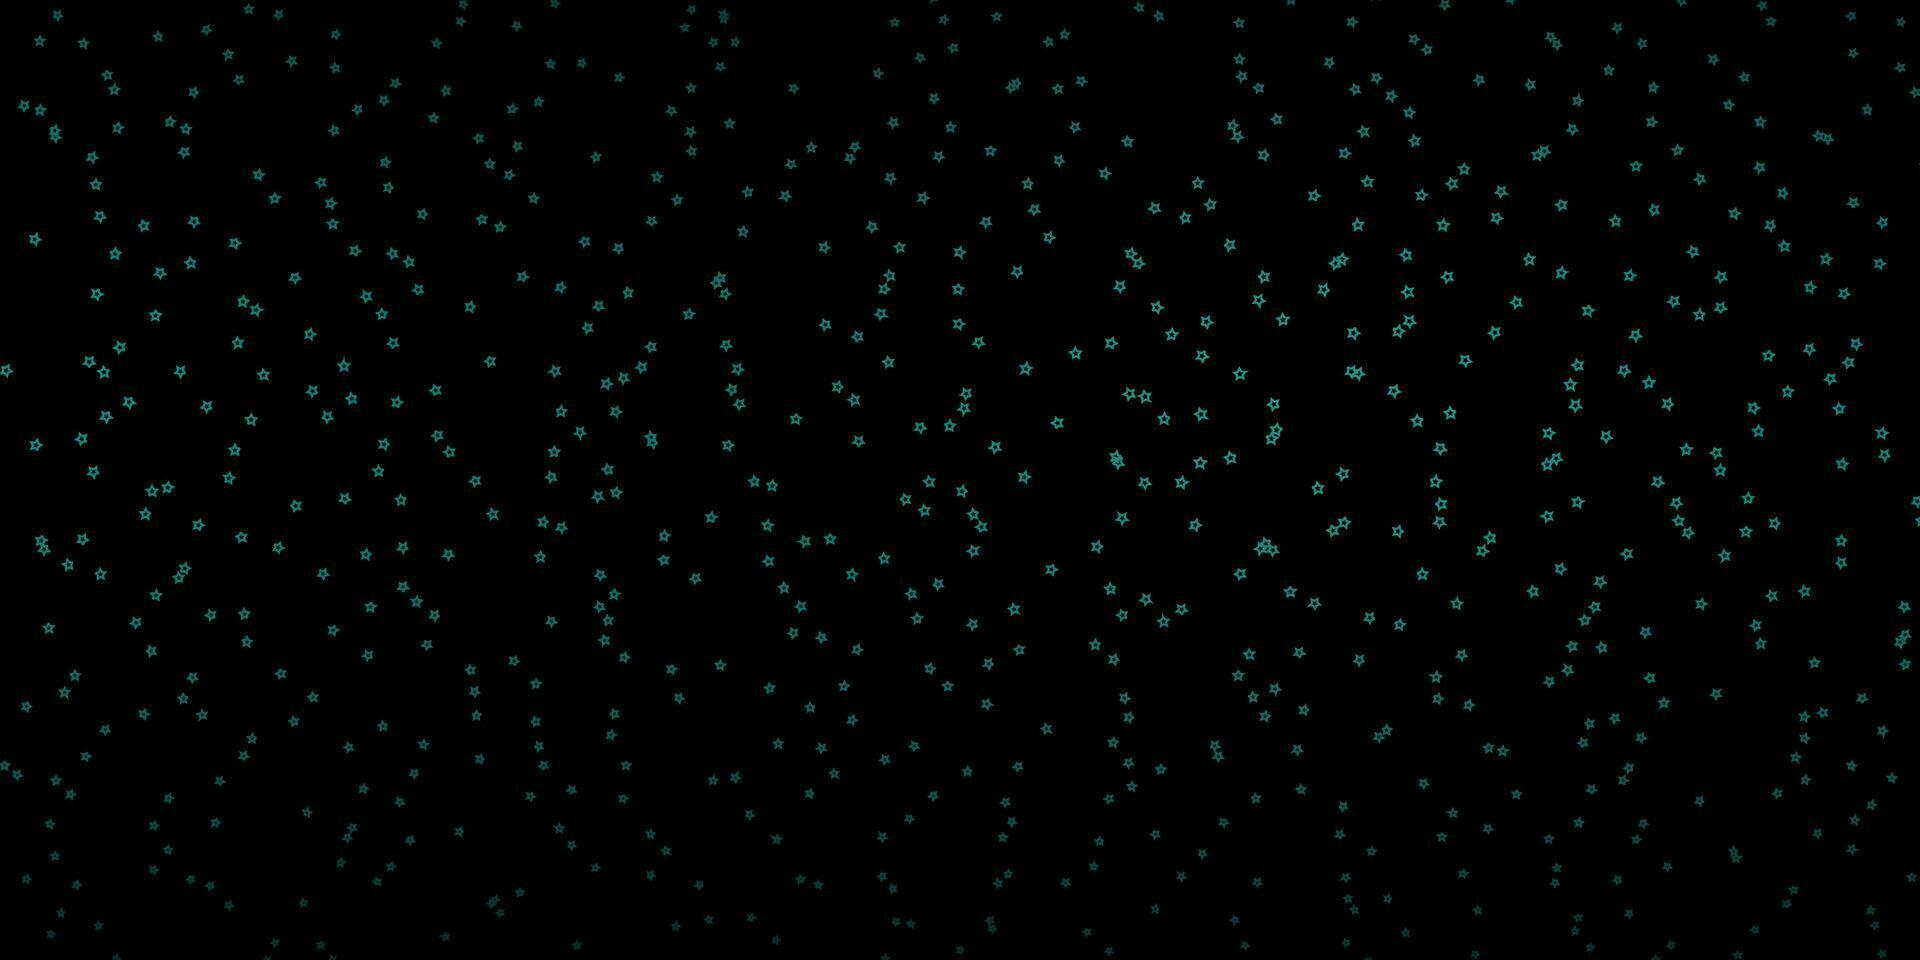 texture vecteur vert foncé avec de belles étoiles.